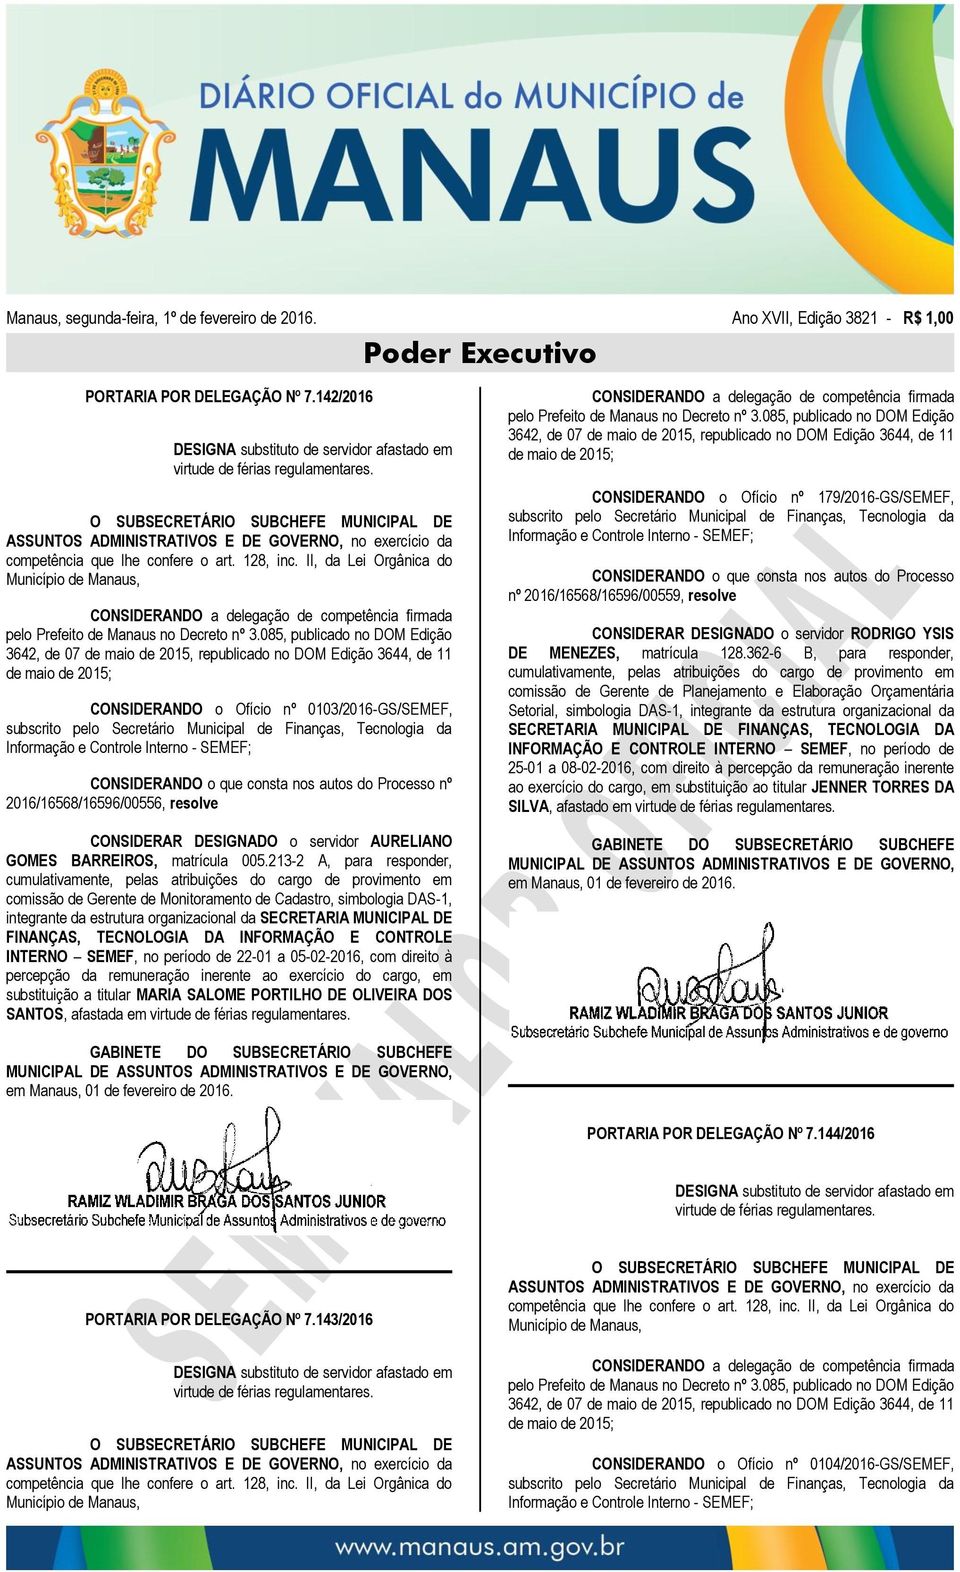 II, da Lei Orgânica do Município de Manaus, CONSIDERANDO a delegação de competência firmada pelo Prefeito de Manaus no Decreto nº 3.